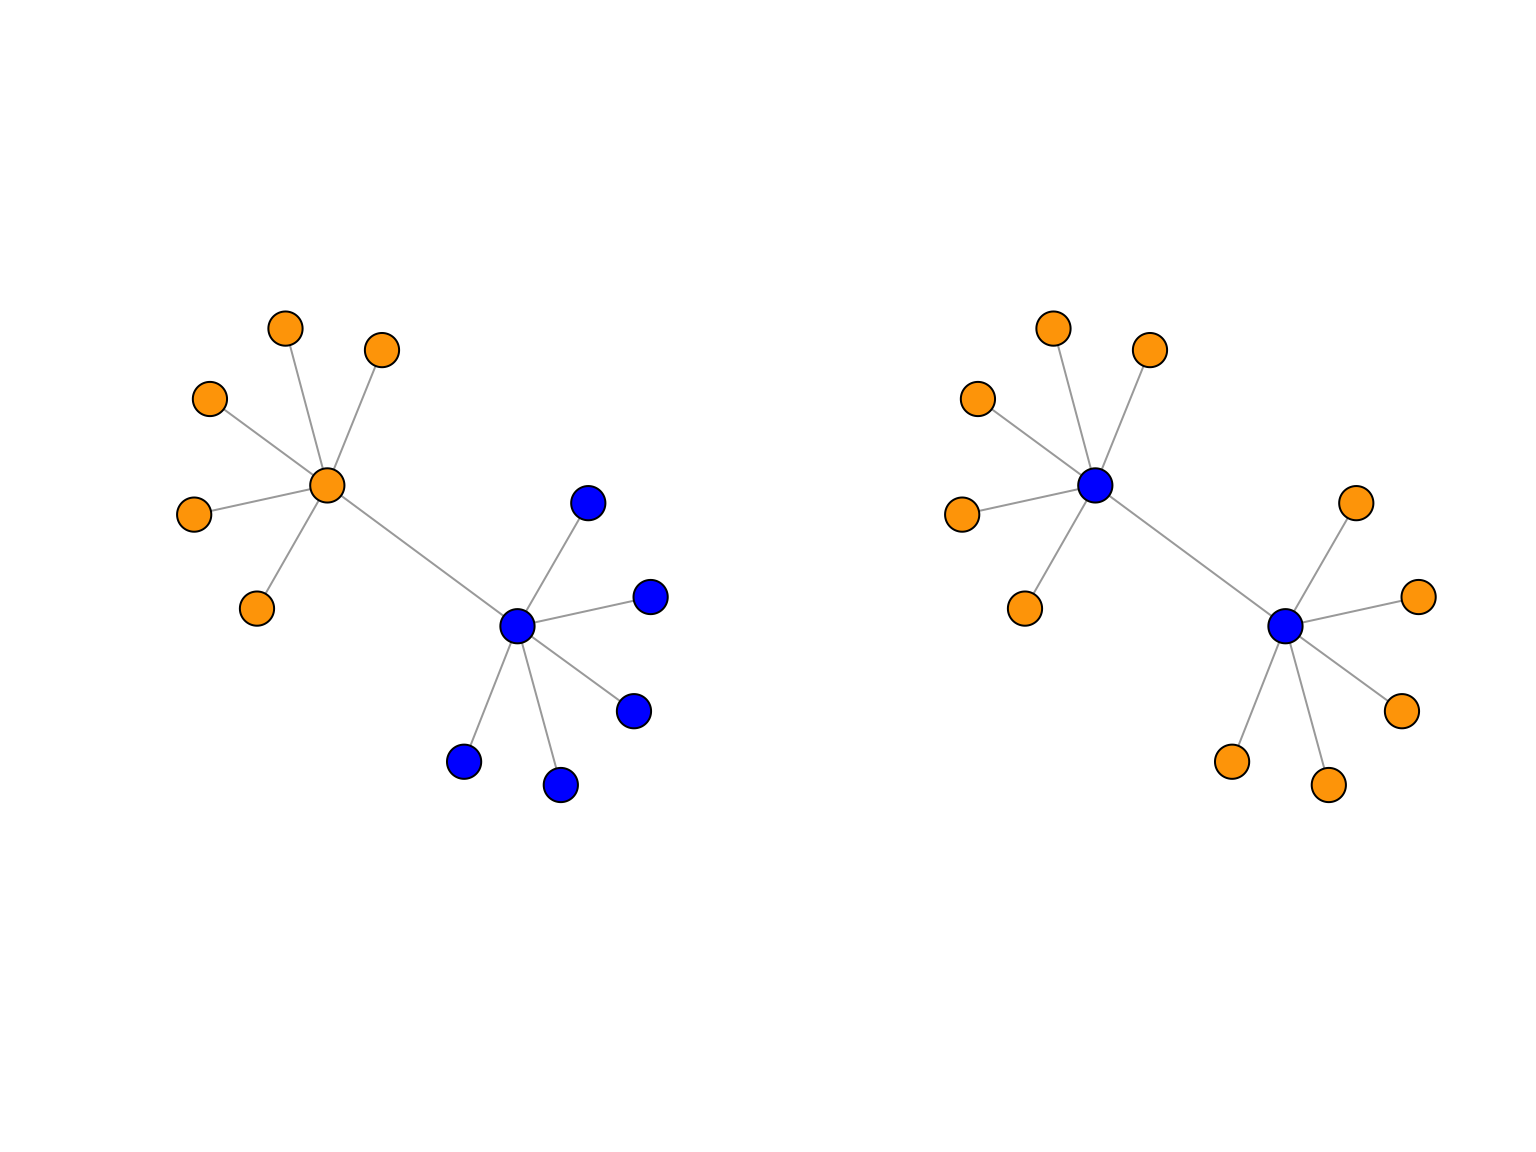 Deux partionnements différents pour les noeuds d'un même graphe. A gauche: des communautés. A droite: clustering par un SBM.